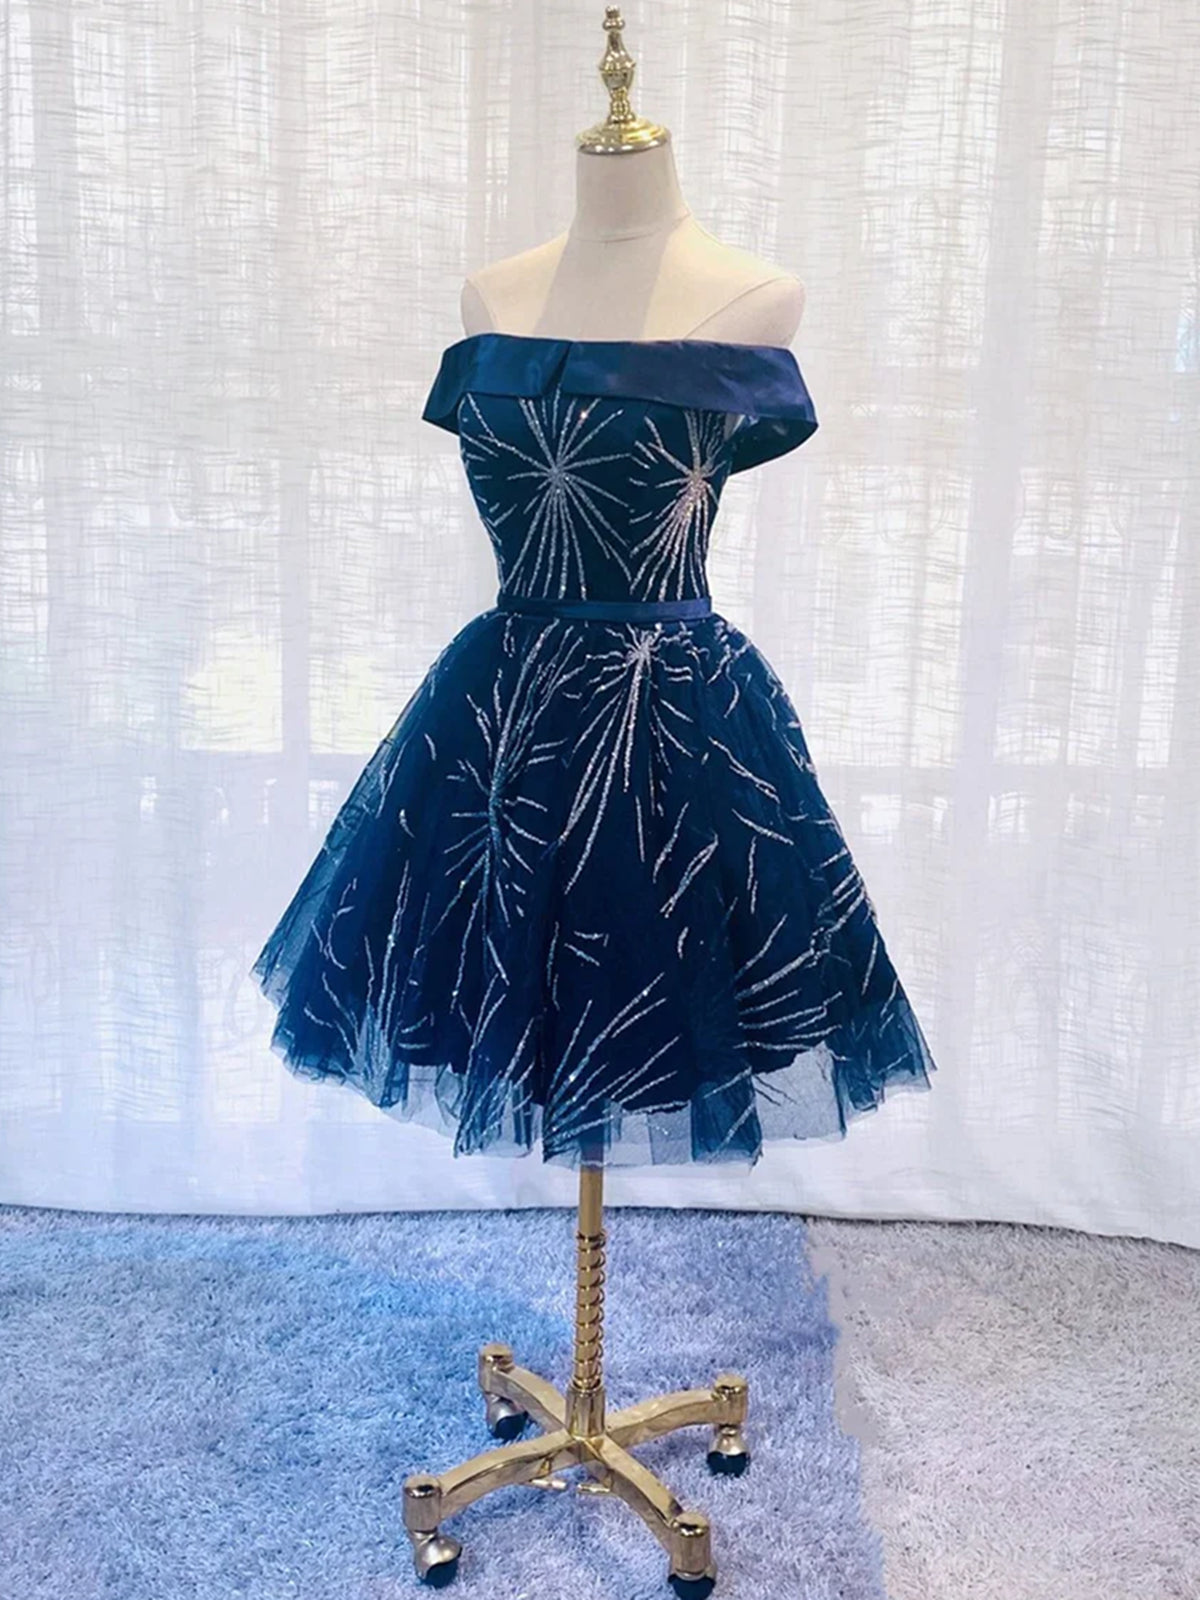 Design Dress, Off the Shoulder Short Navy Blue Prom Dresses, Short Dark Blue Formal Homecoming Dresses